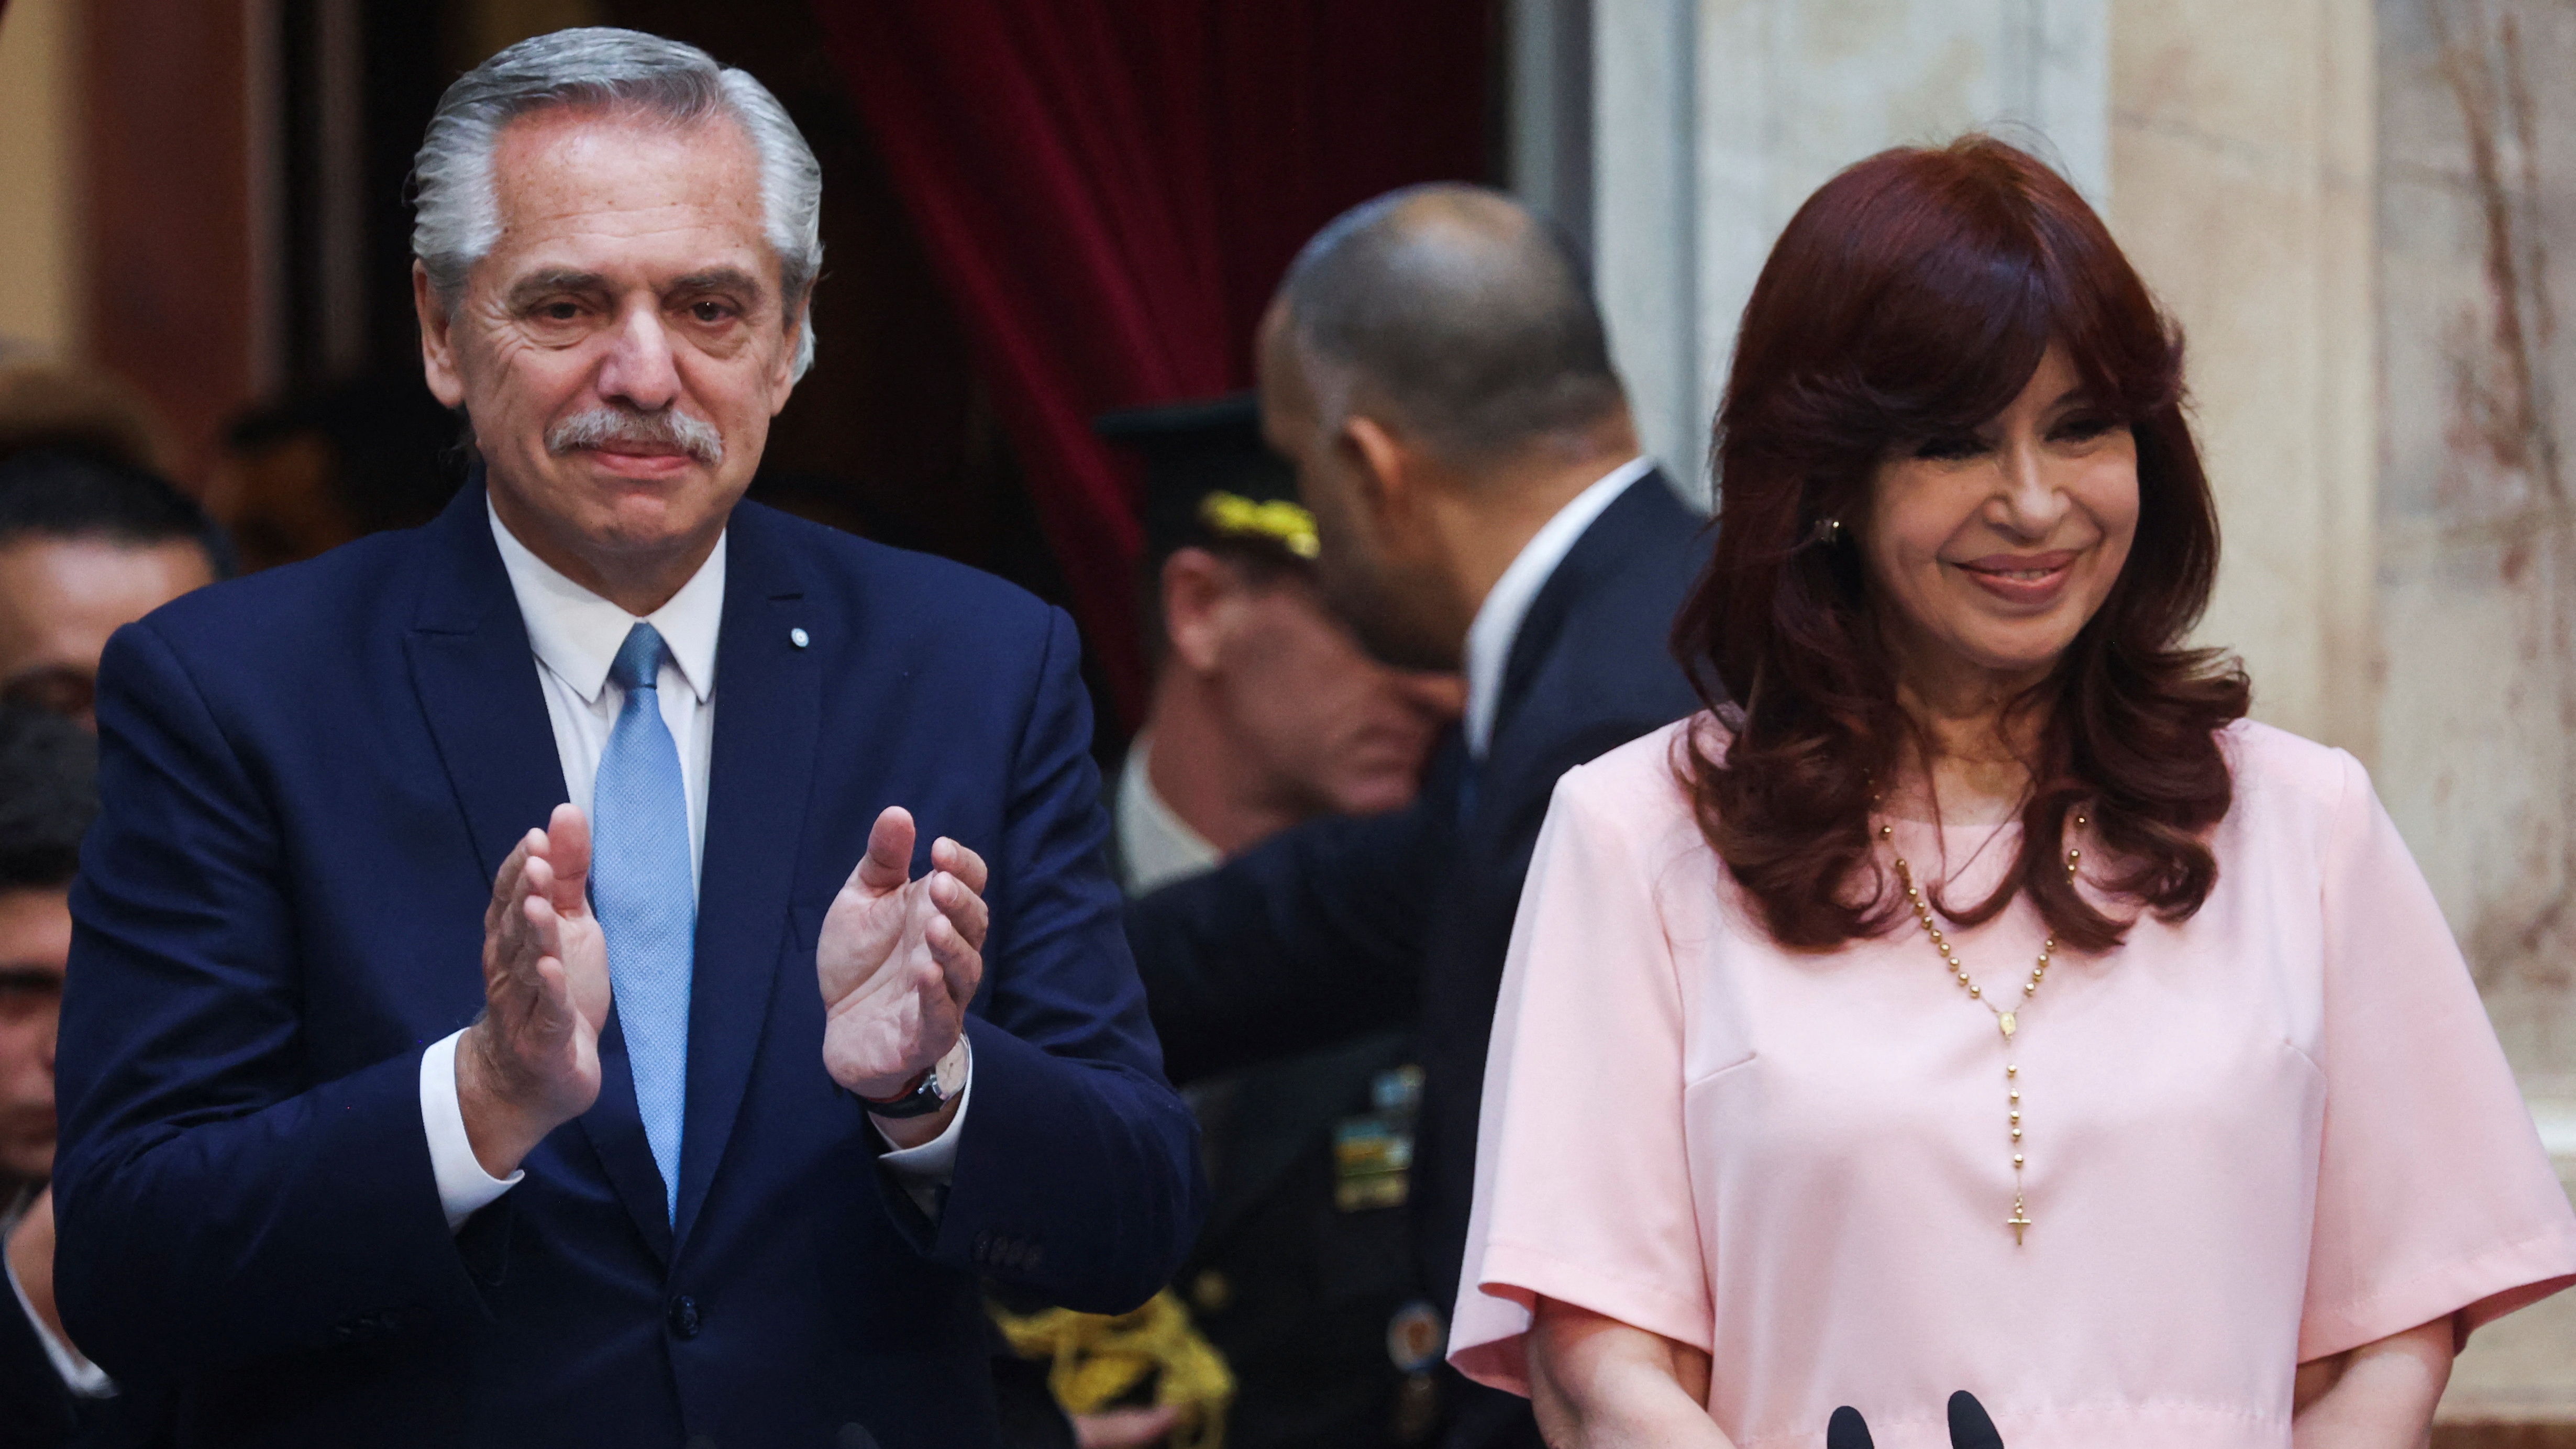 La última vez que Alberto Fernández y Cristina Kirchner se vieron en persona fue en la Asamblea Legislativa, pero no hablaron en privado. Sólo se comunican por chat